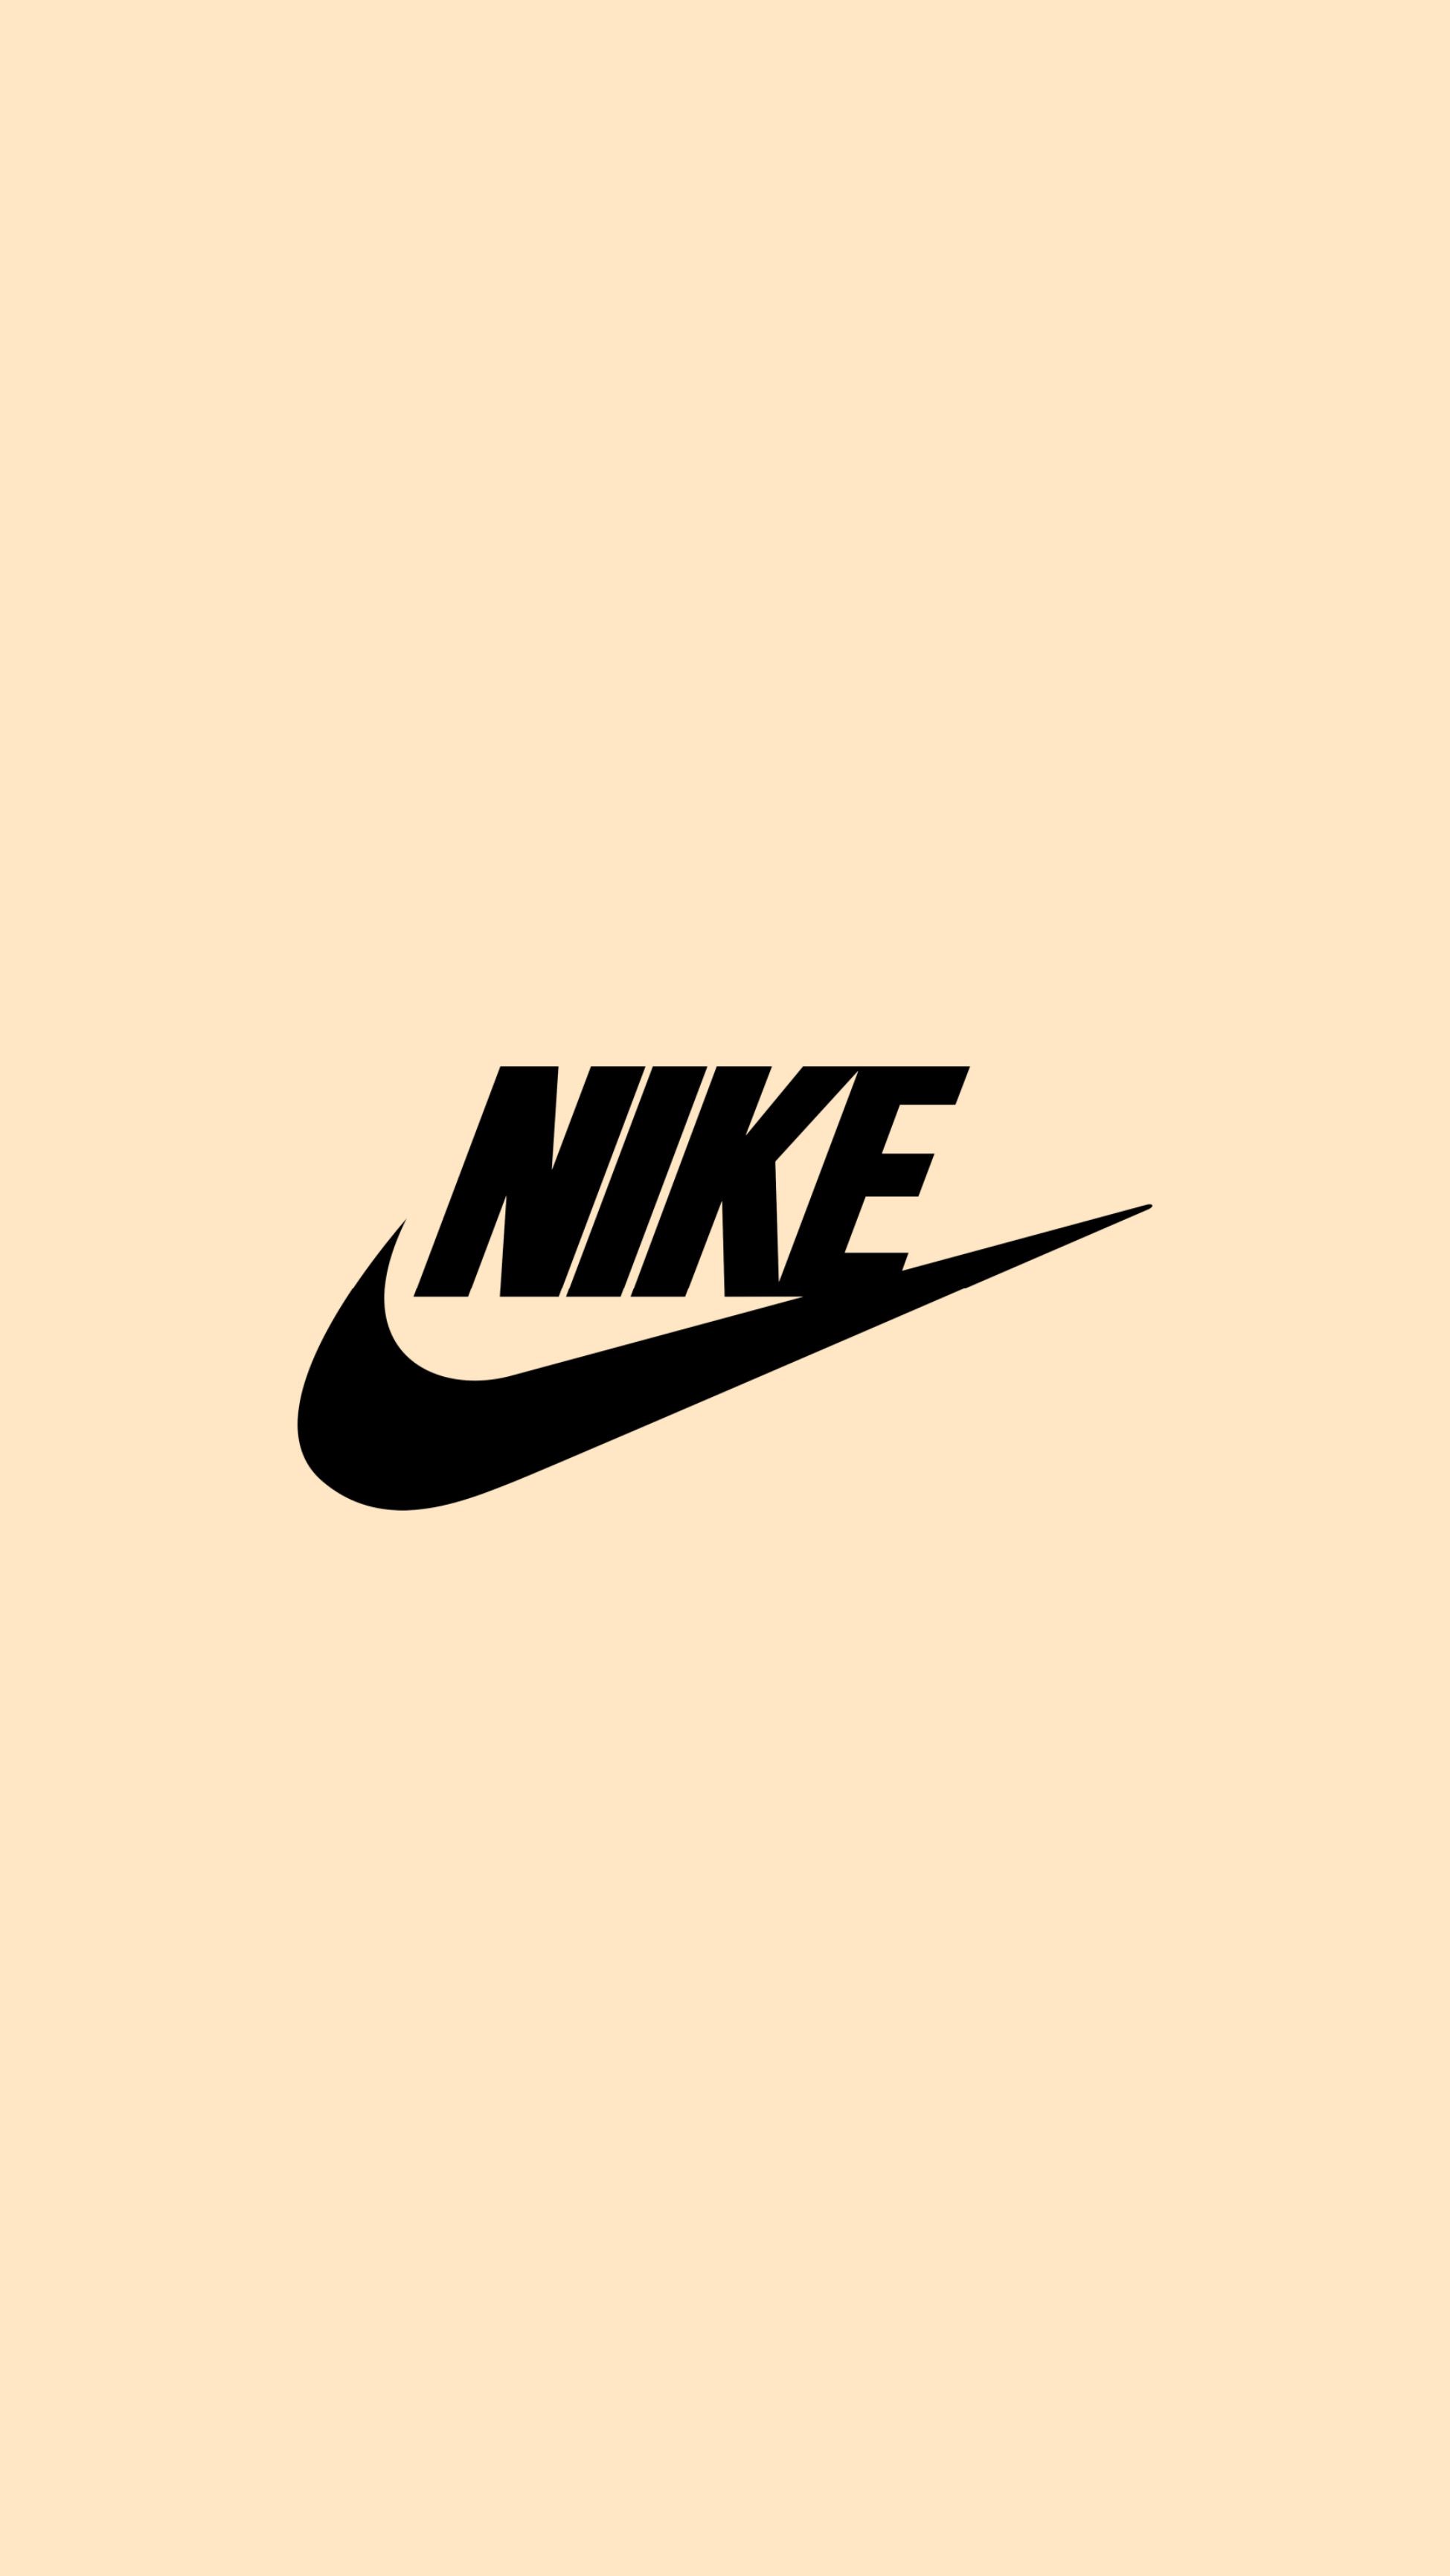 Nike logo. Nike wallpaper, iPhone wallpaper vintage hipster, Adidas iphone wallpaper